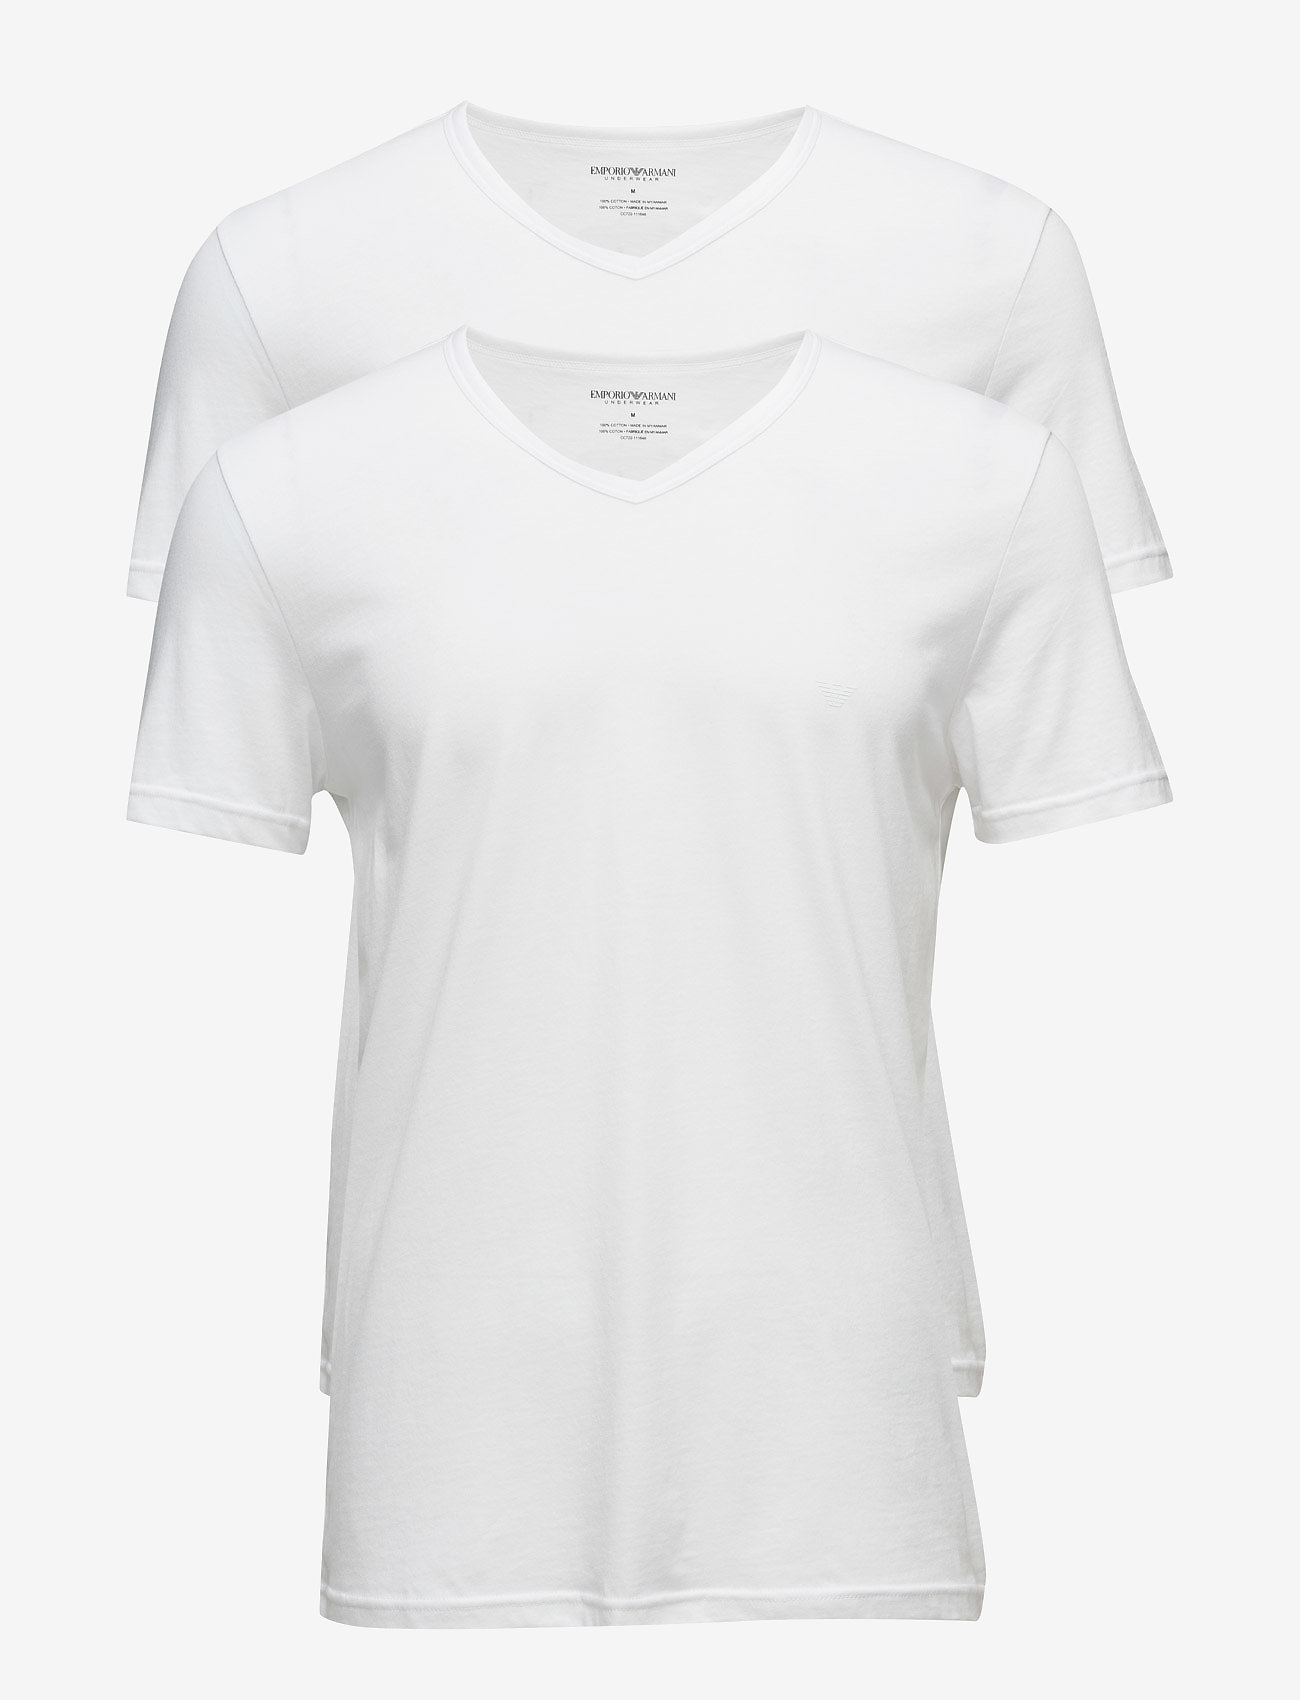 Emporio Armani - MENS KNIT 2PACK TSH - basic t-shirts - bianco/bianco - 0